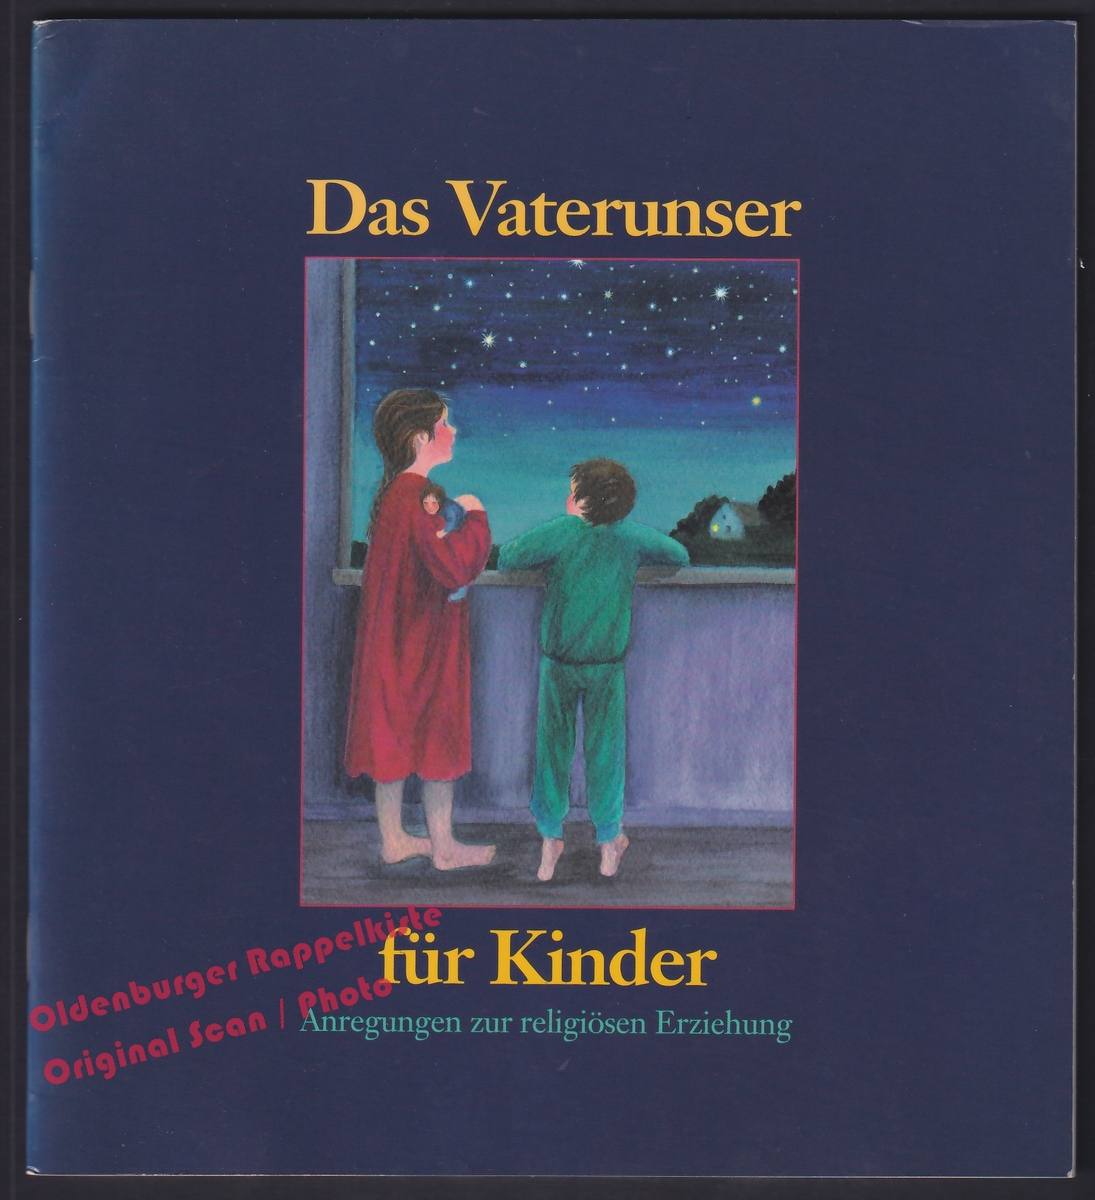 Das Vaterunser für Kinder: Anregungen zur religiösen Erziehung   -  Schupp, Renate  2. Auflage - Schupp, Renate Jacob, Waltraud M